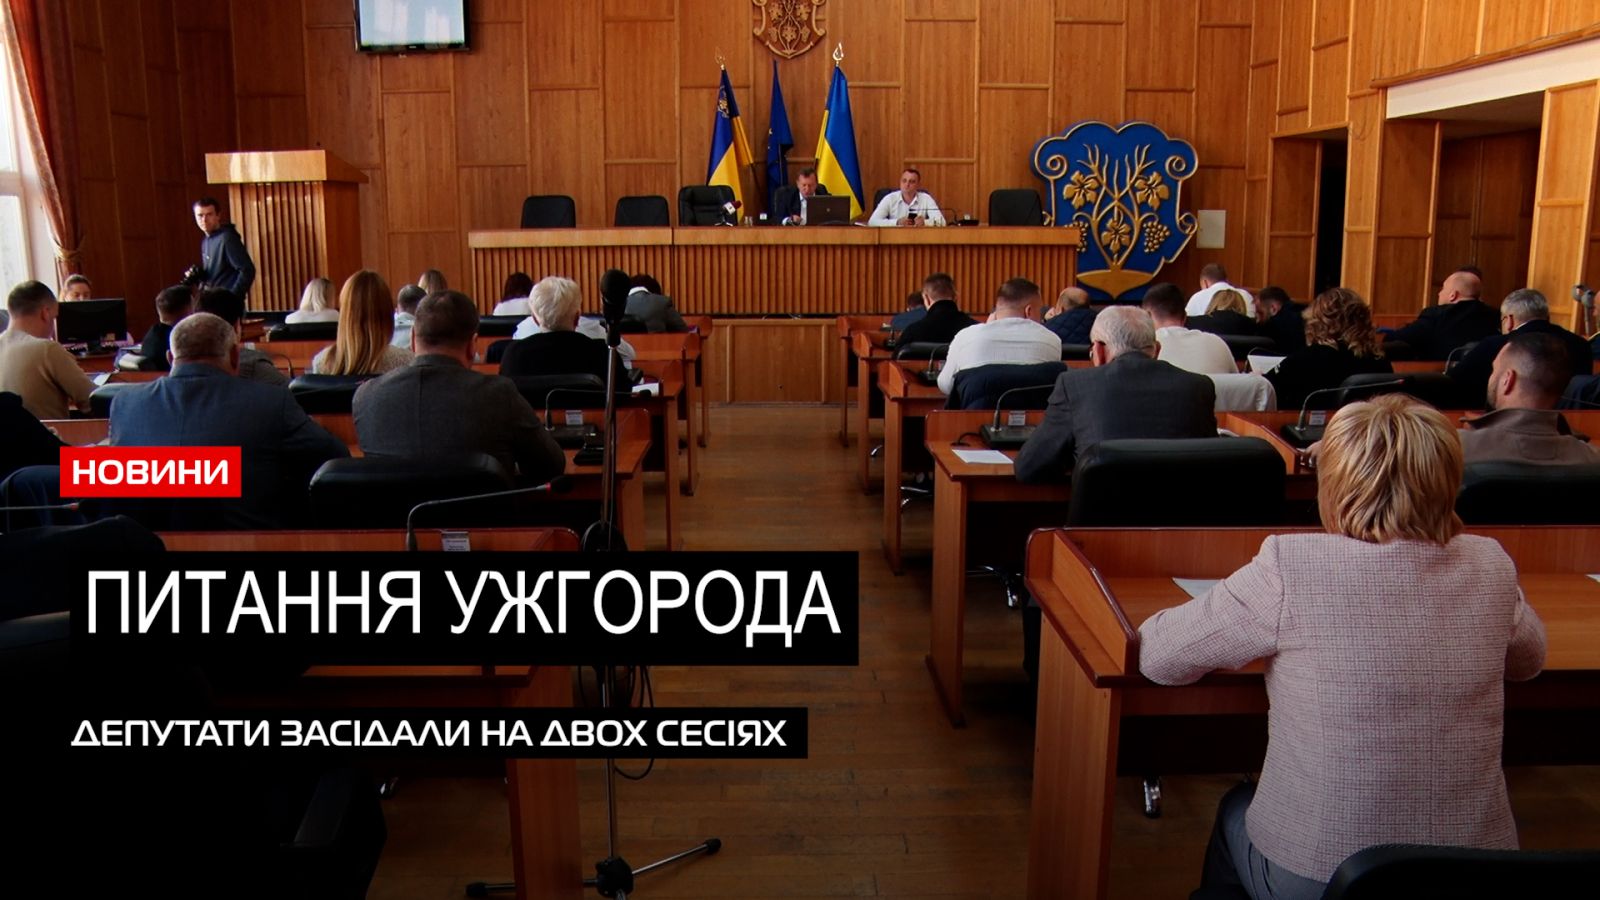  Питання міста: в стінах Ужгородської міської ради відбулося два сесійних засідання (ВІДЕО) 0